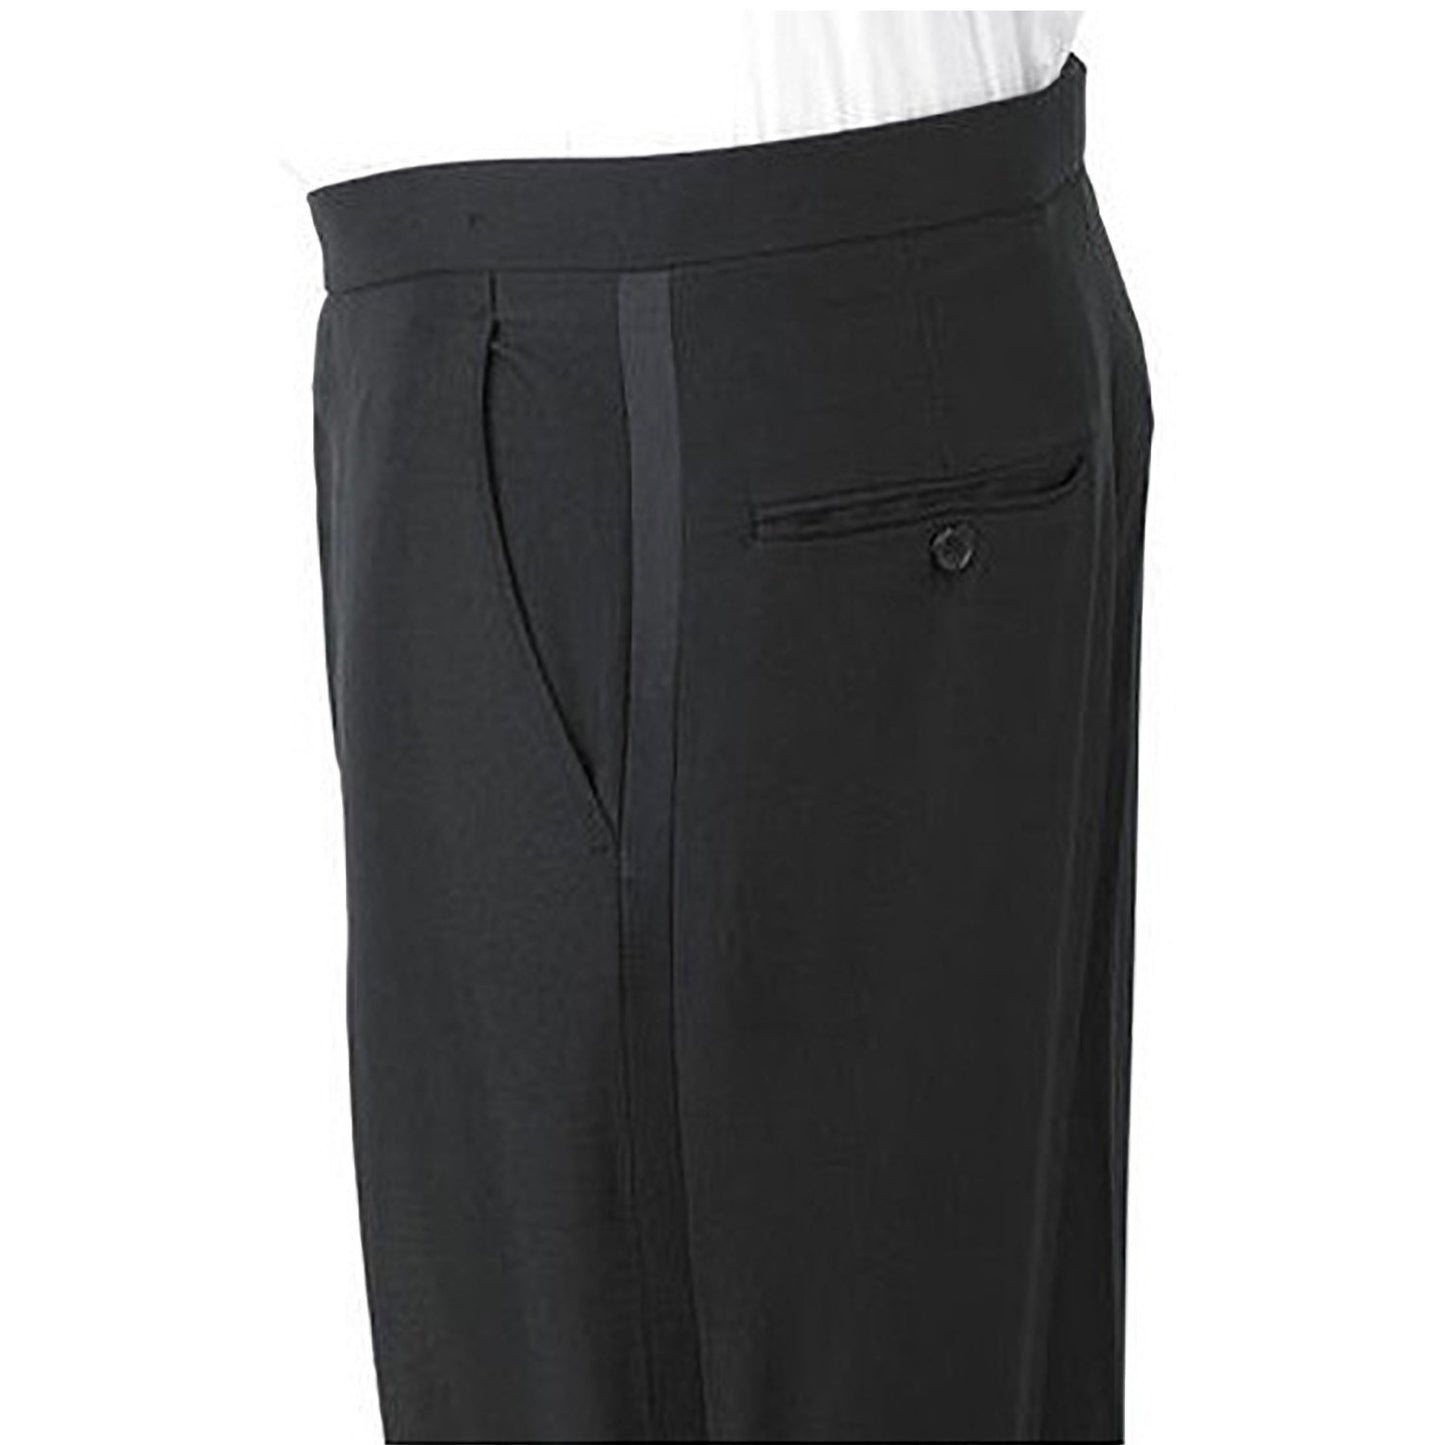 Men's Plain Front/Comfort Waist Pant